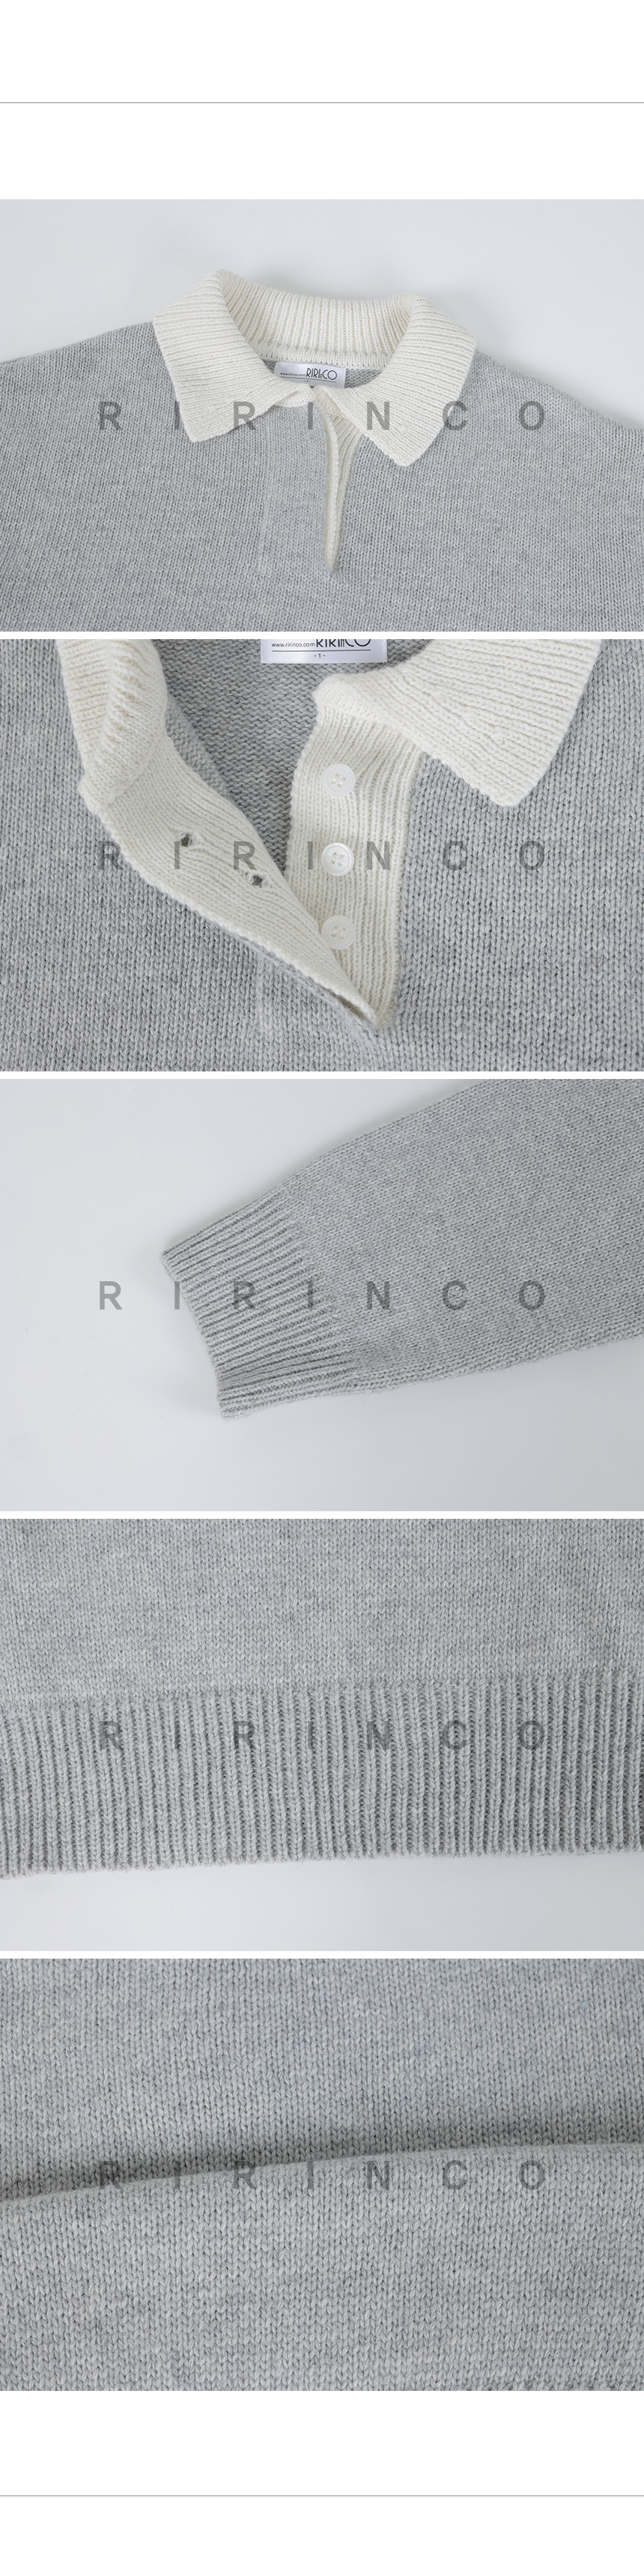 RIRINCO ウール配色オープンカラーニット